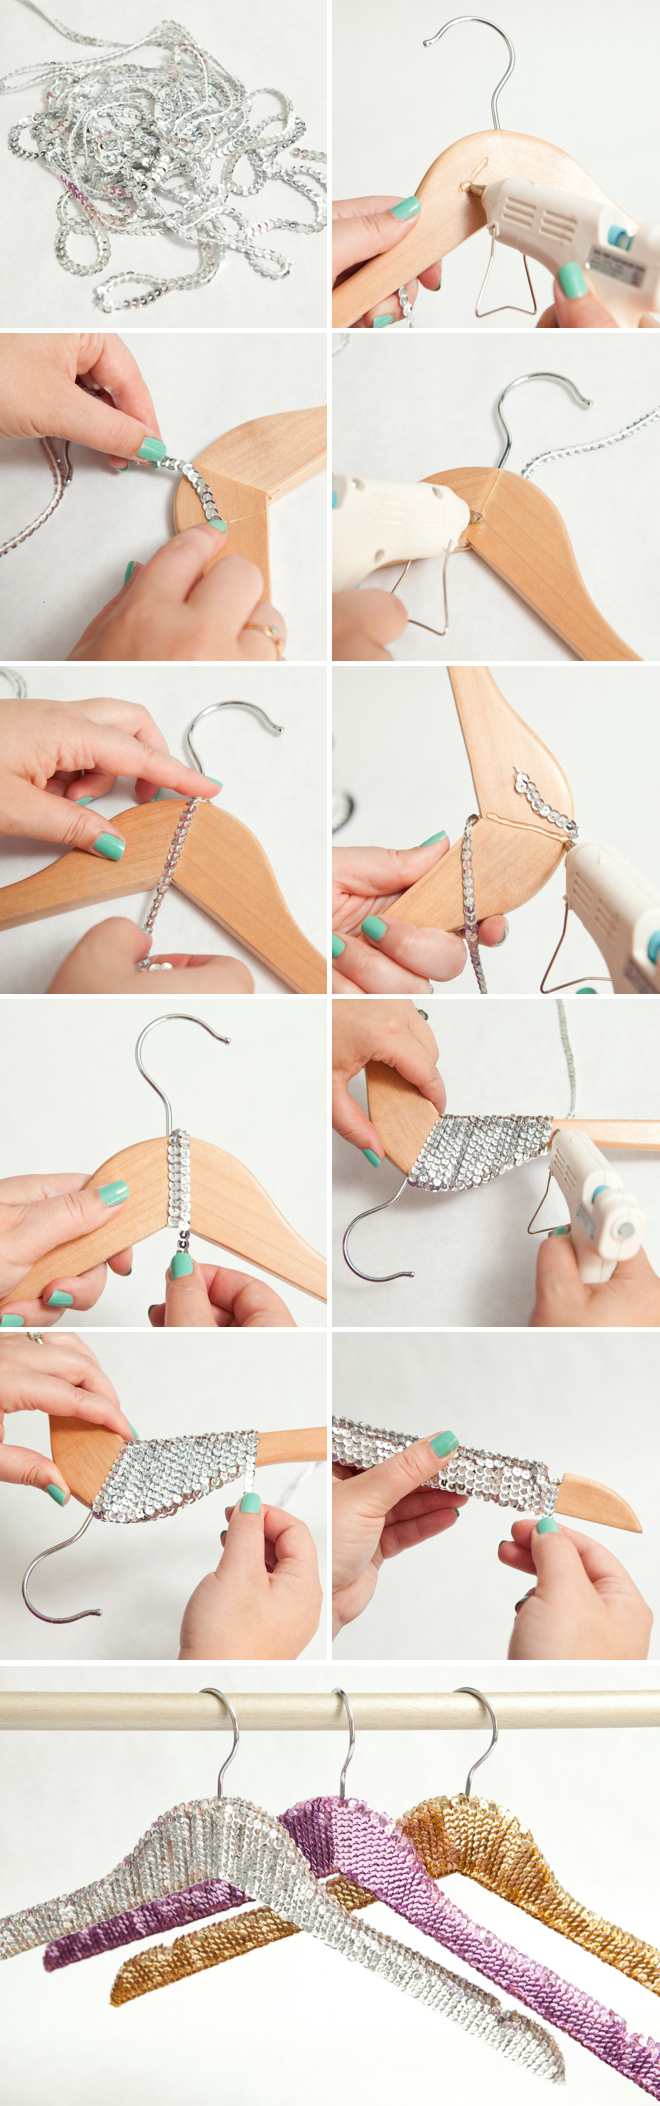 How To Make Sequin Hangers